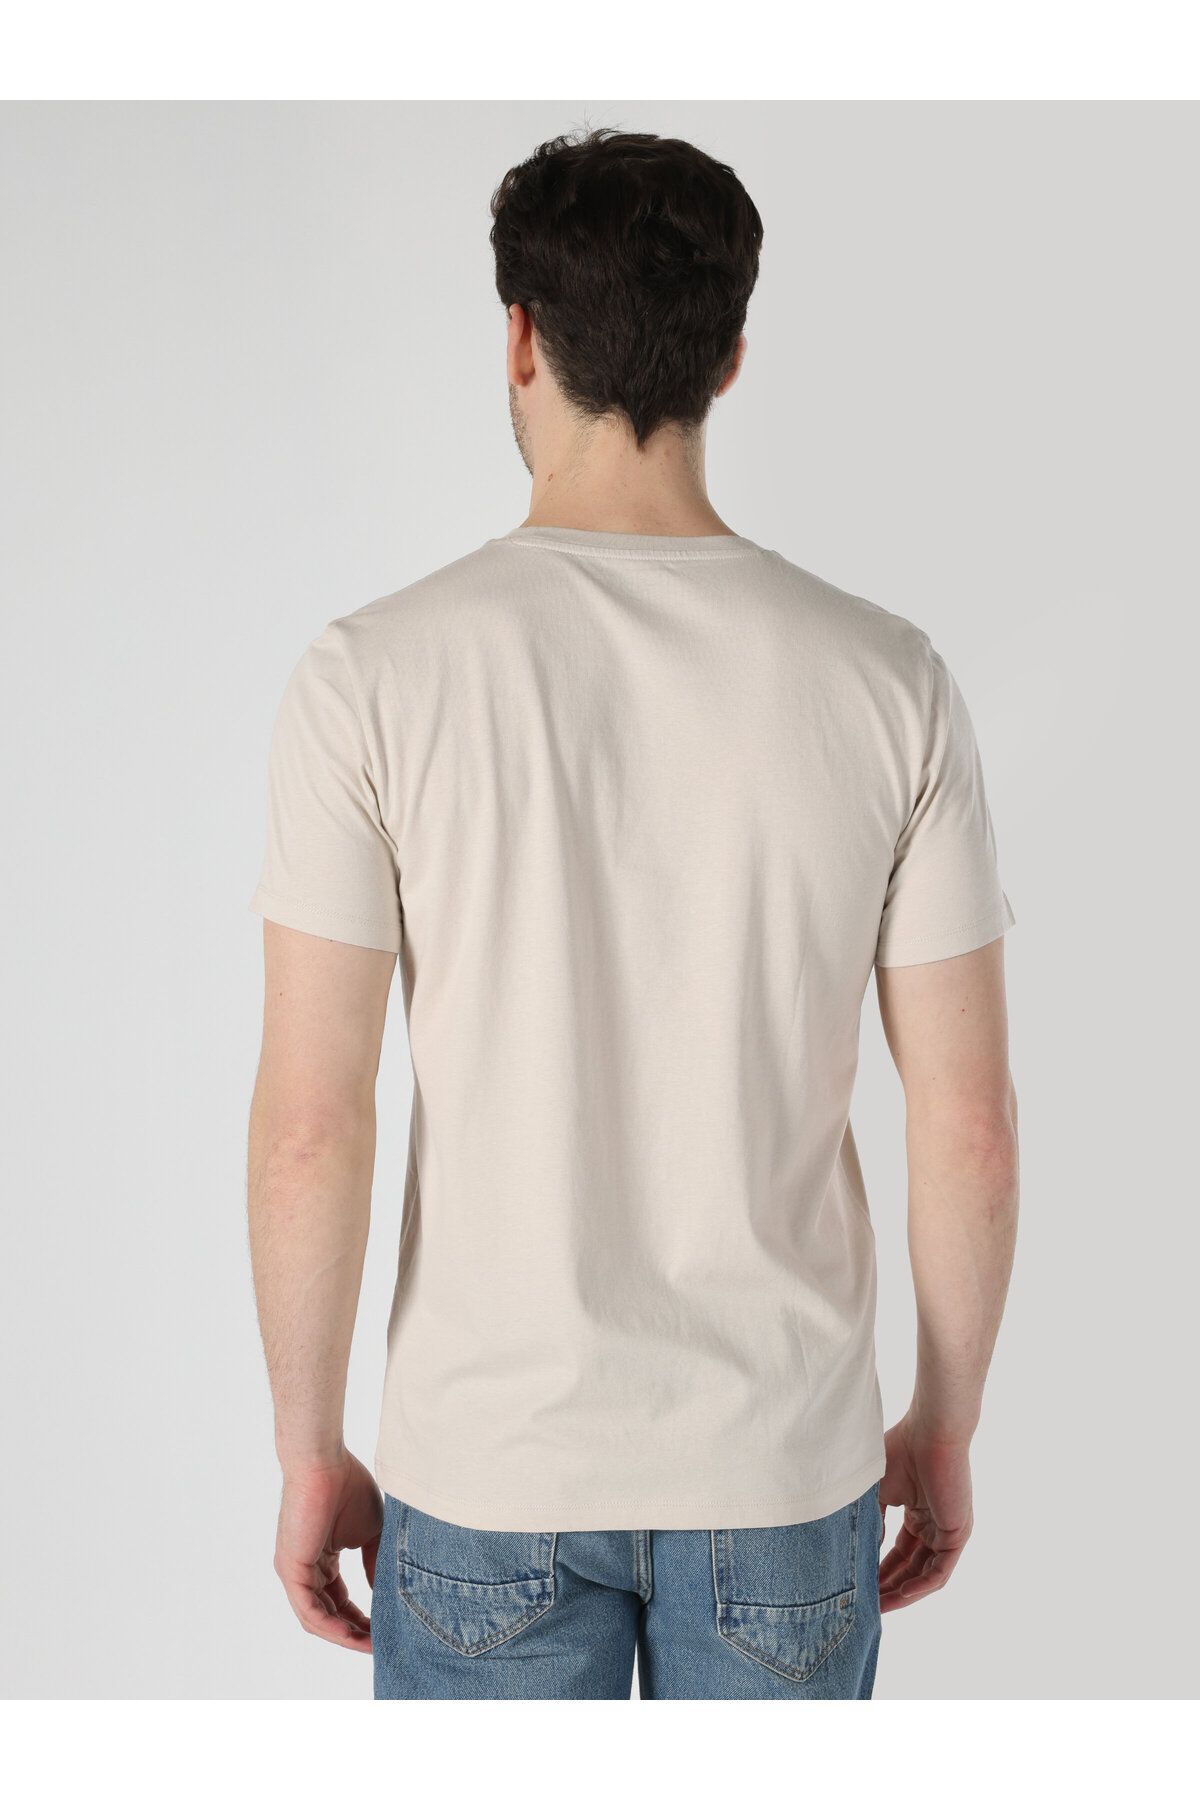 Colin’s به طور منظم متناسب با بژهای بژ چاپ شده بازوی کوتاه T شرت